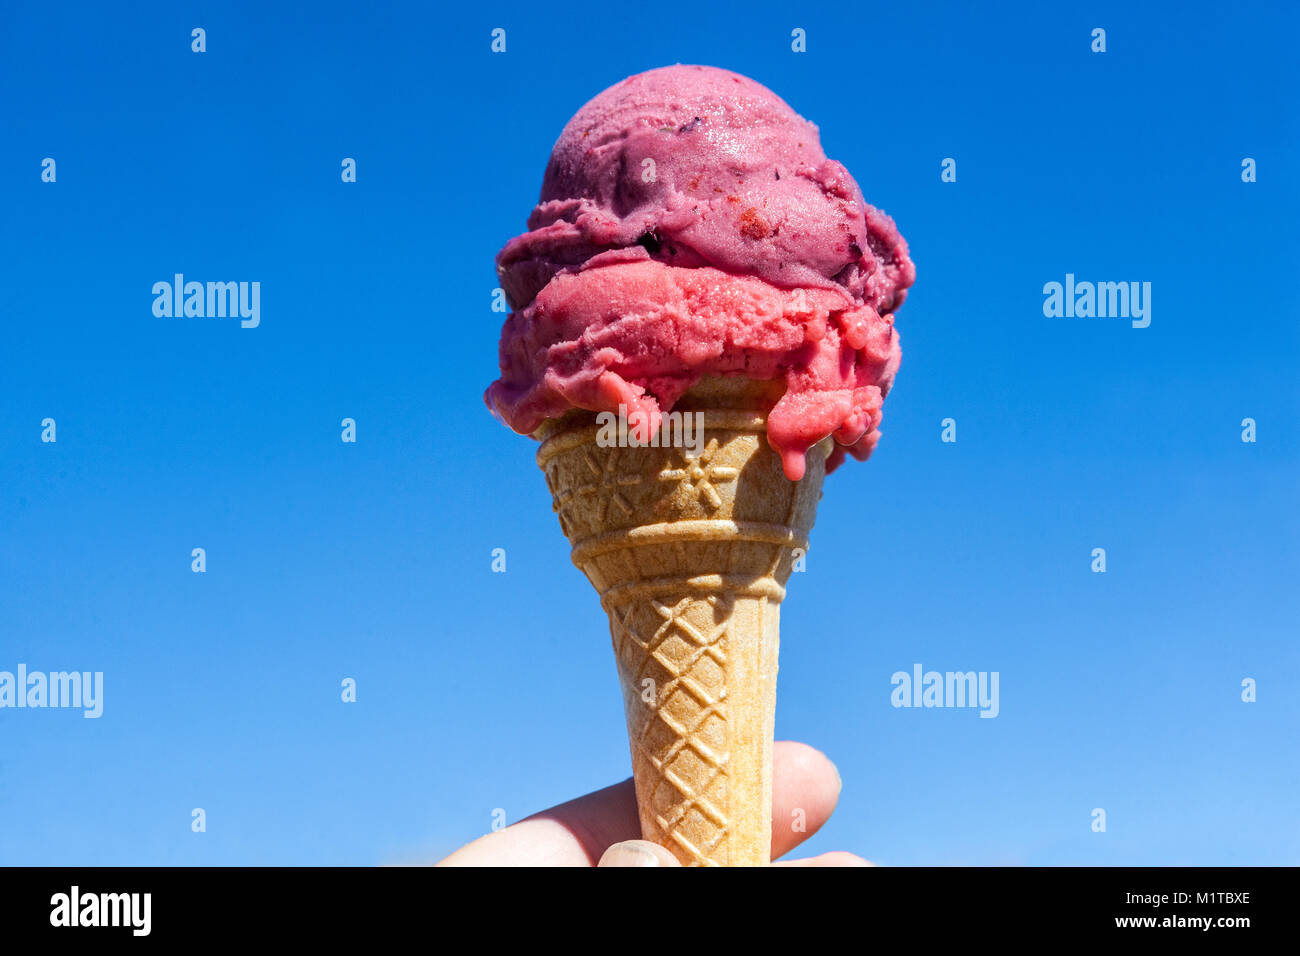 Cornet de crème glacée contre le ciel bleu Banque D'Images